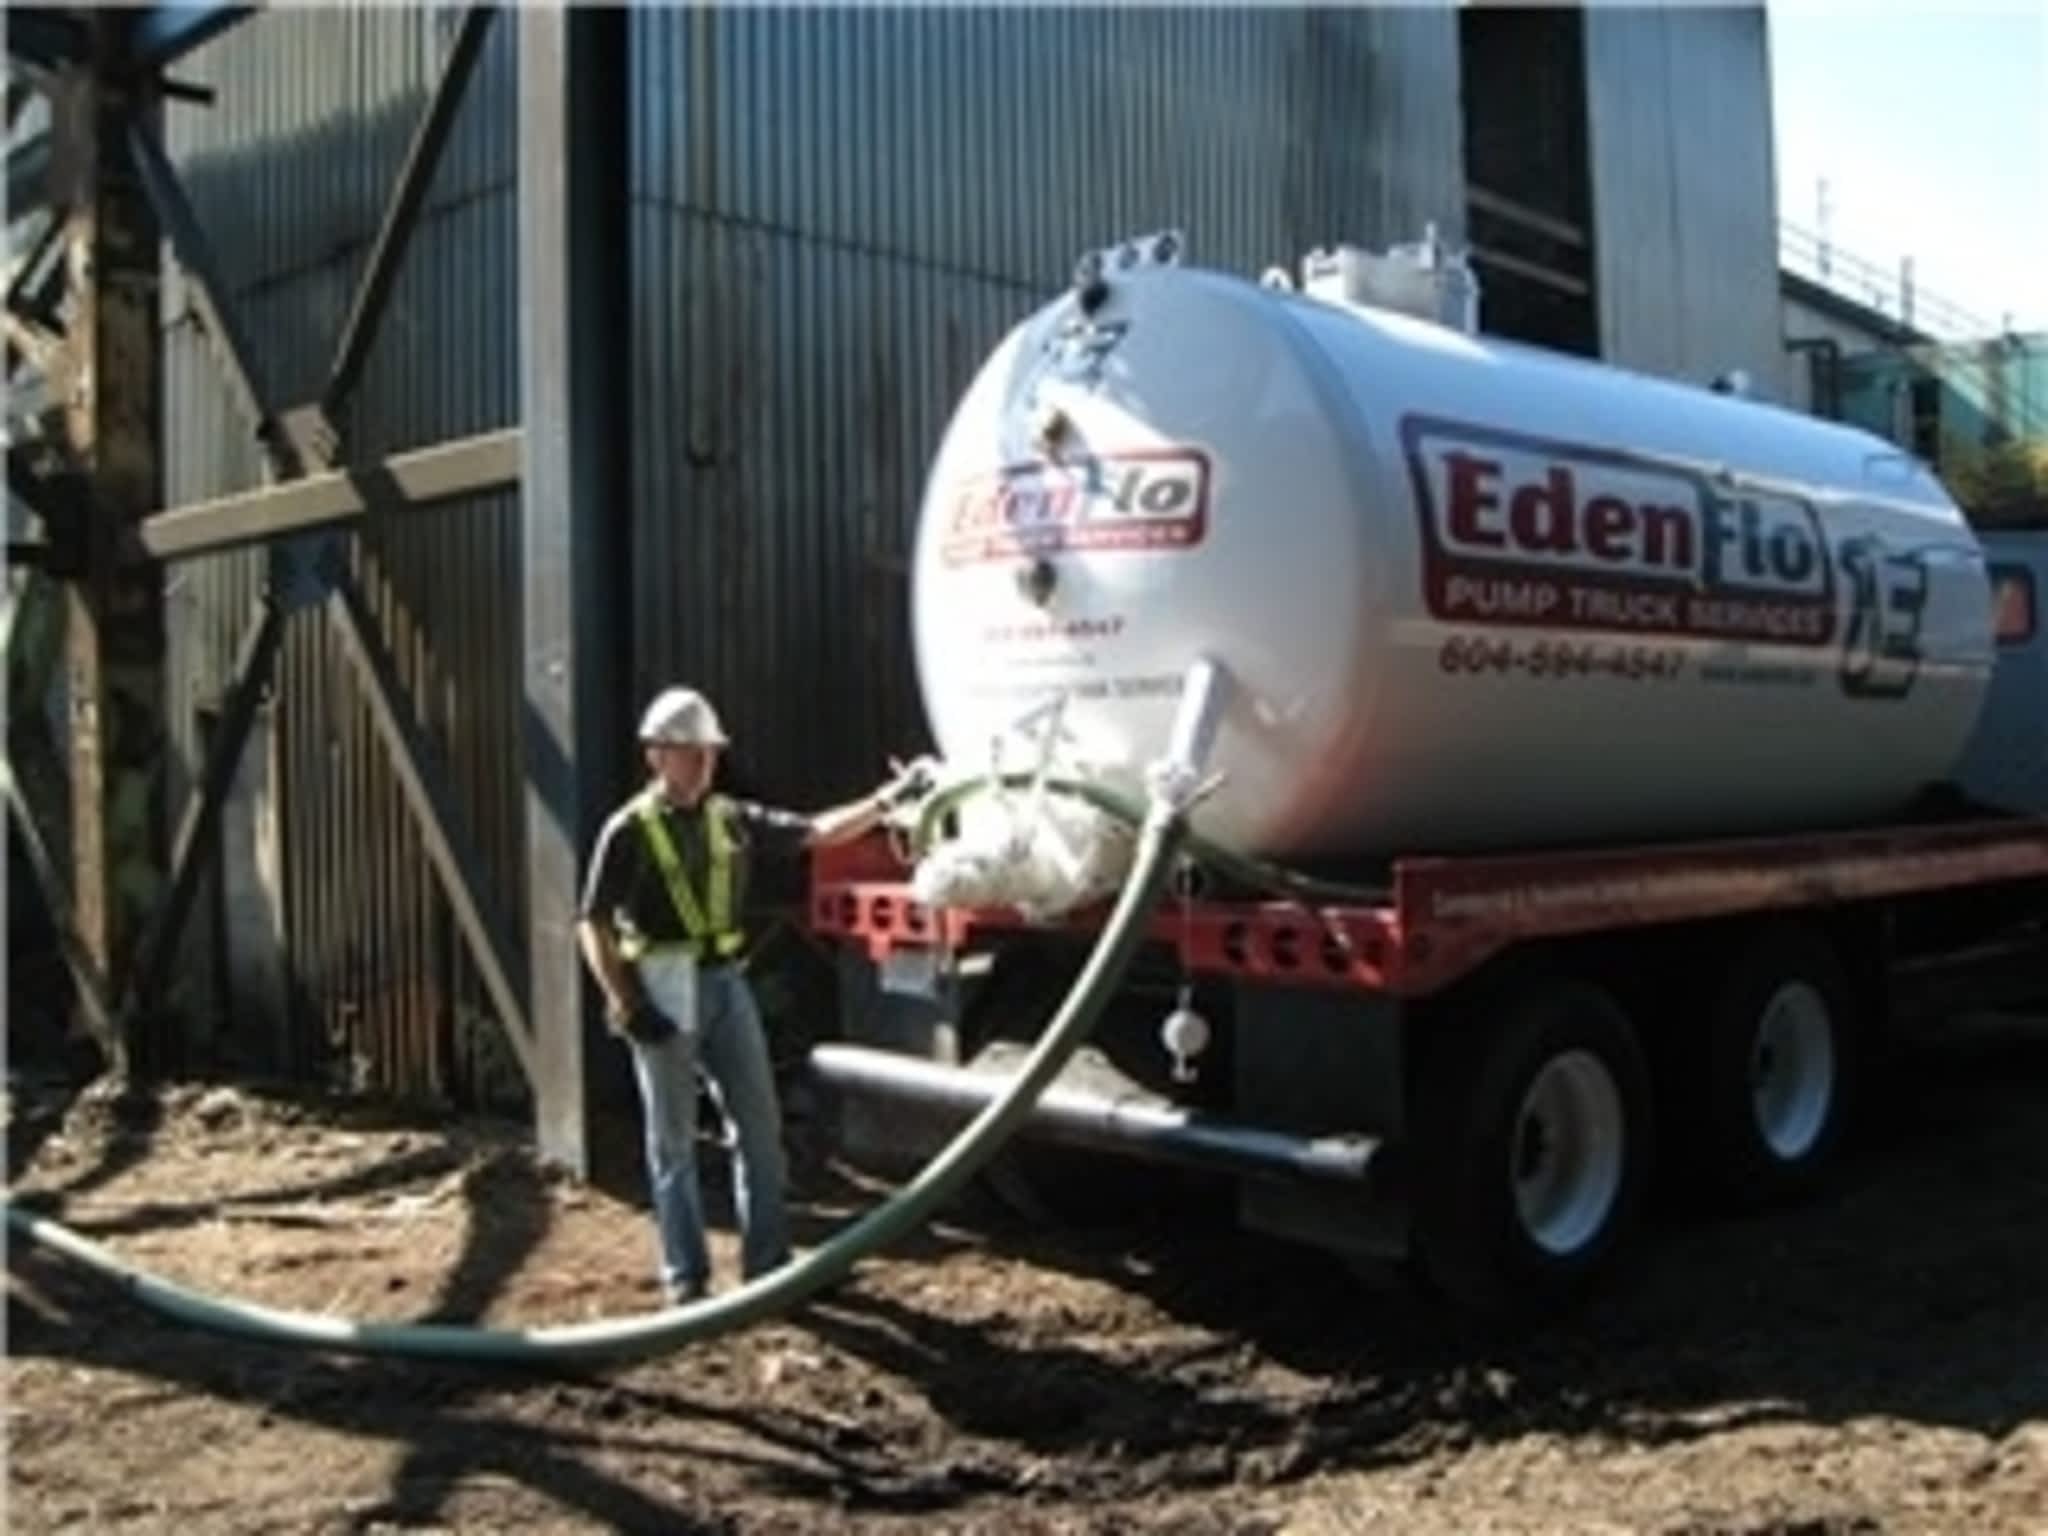 photo Edenflo Pump Truck Services